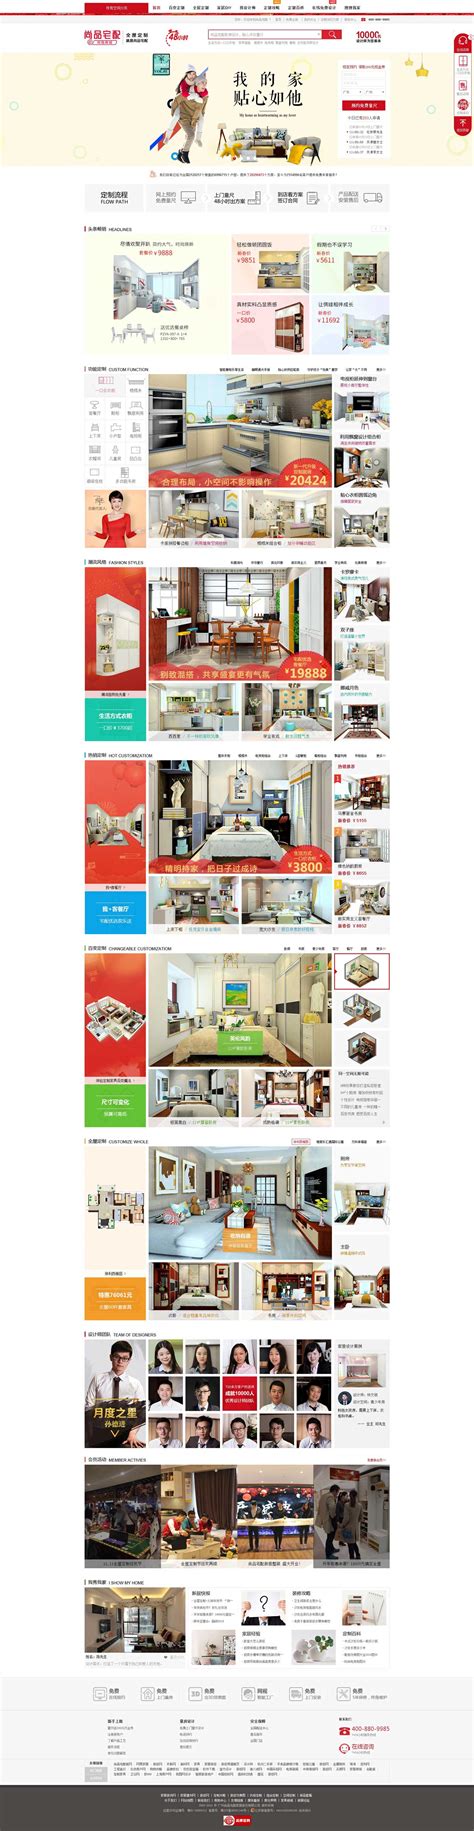 尚品宅配家居网站模板及源代码下载-乐后屋装企营销系统